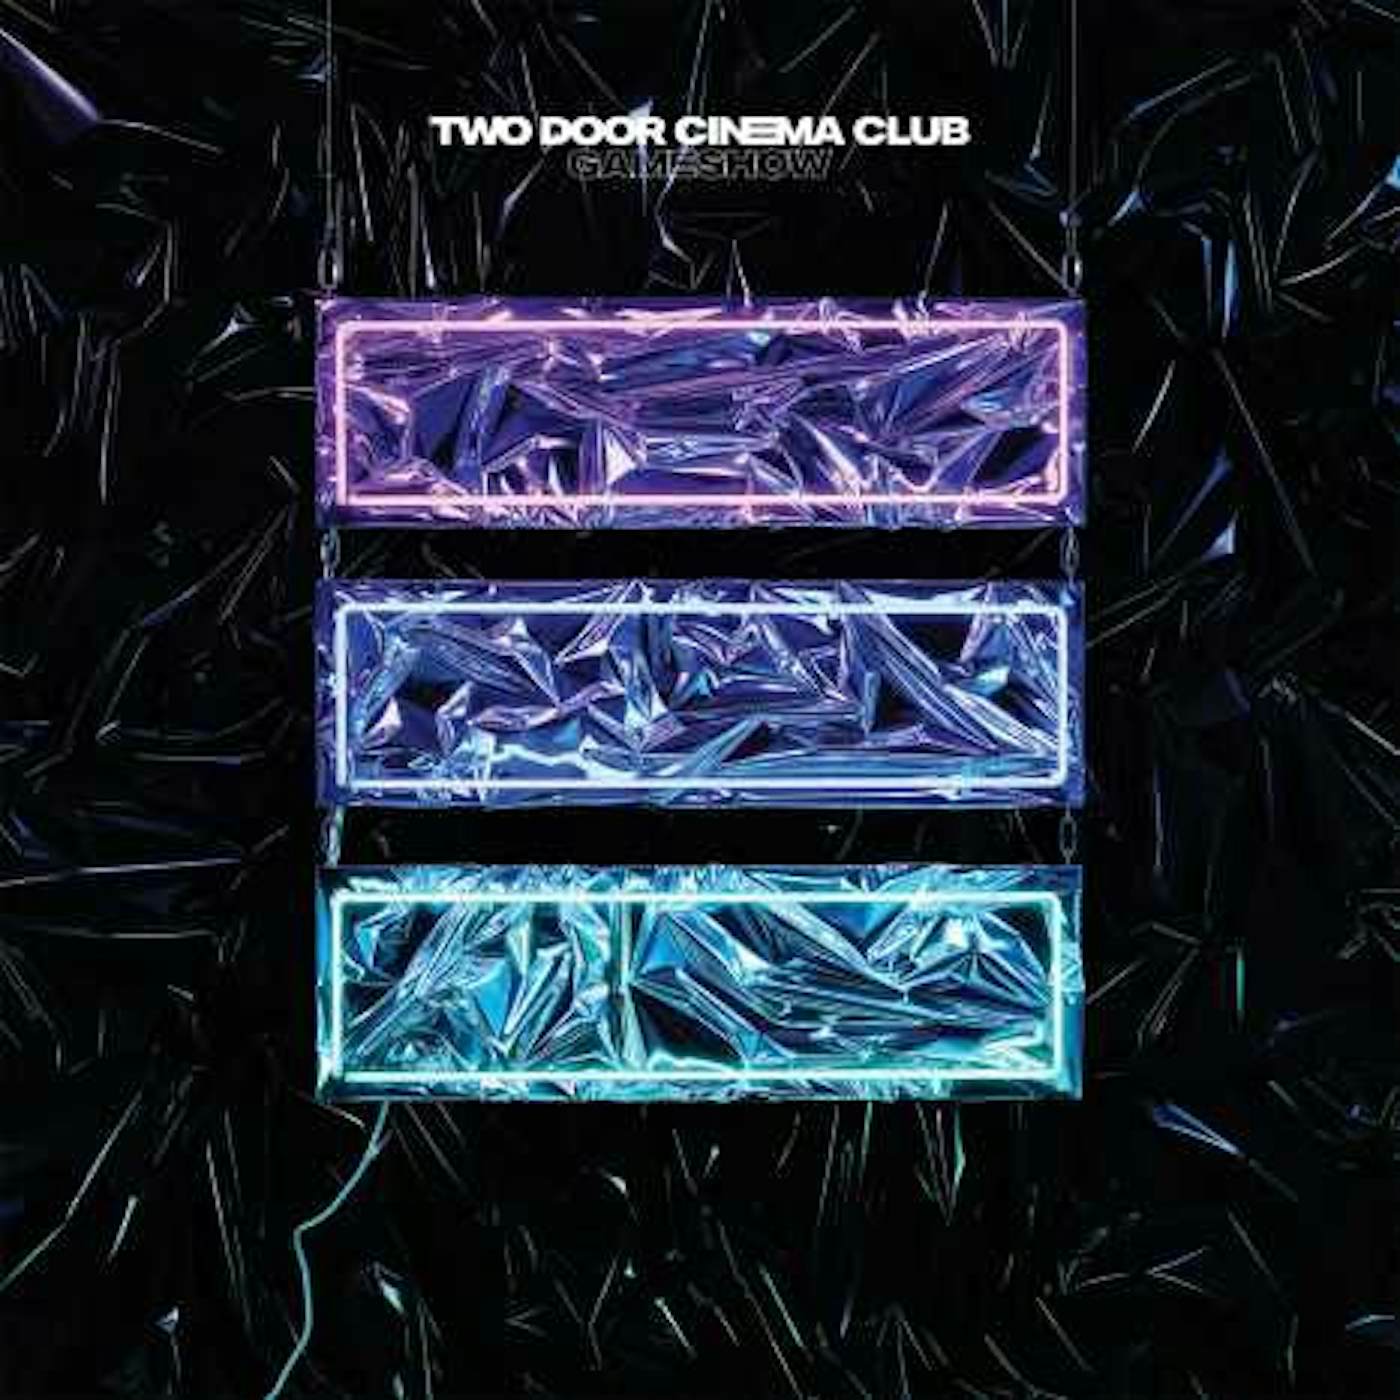 Two Door Cinema Club Gameshow Vinyl Record